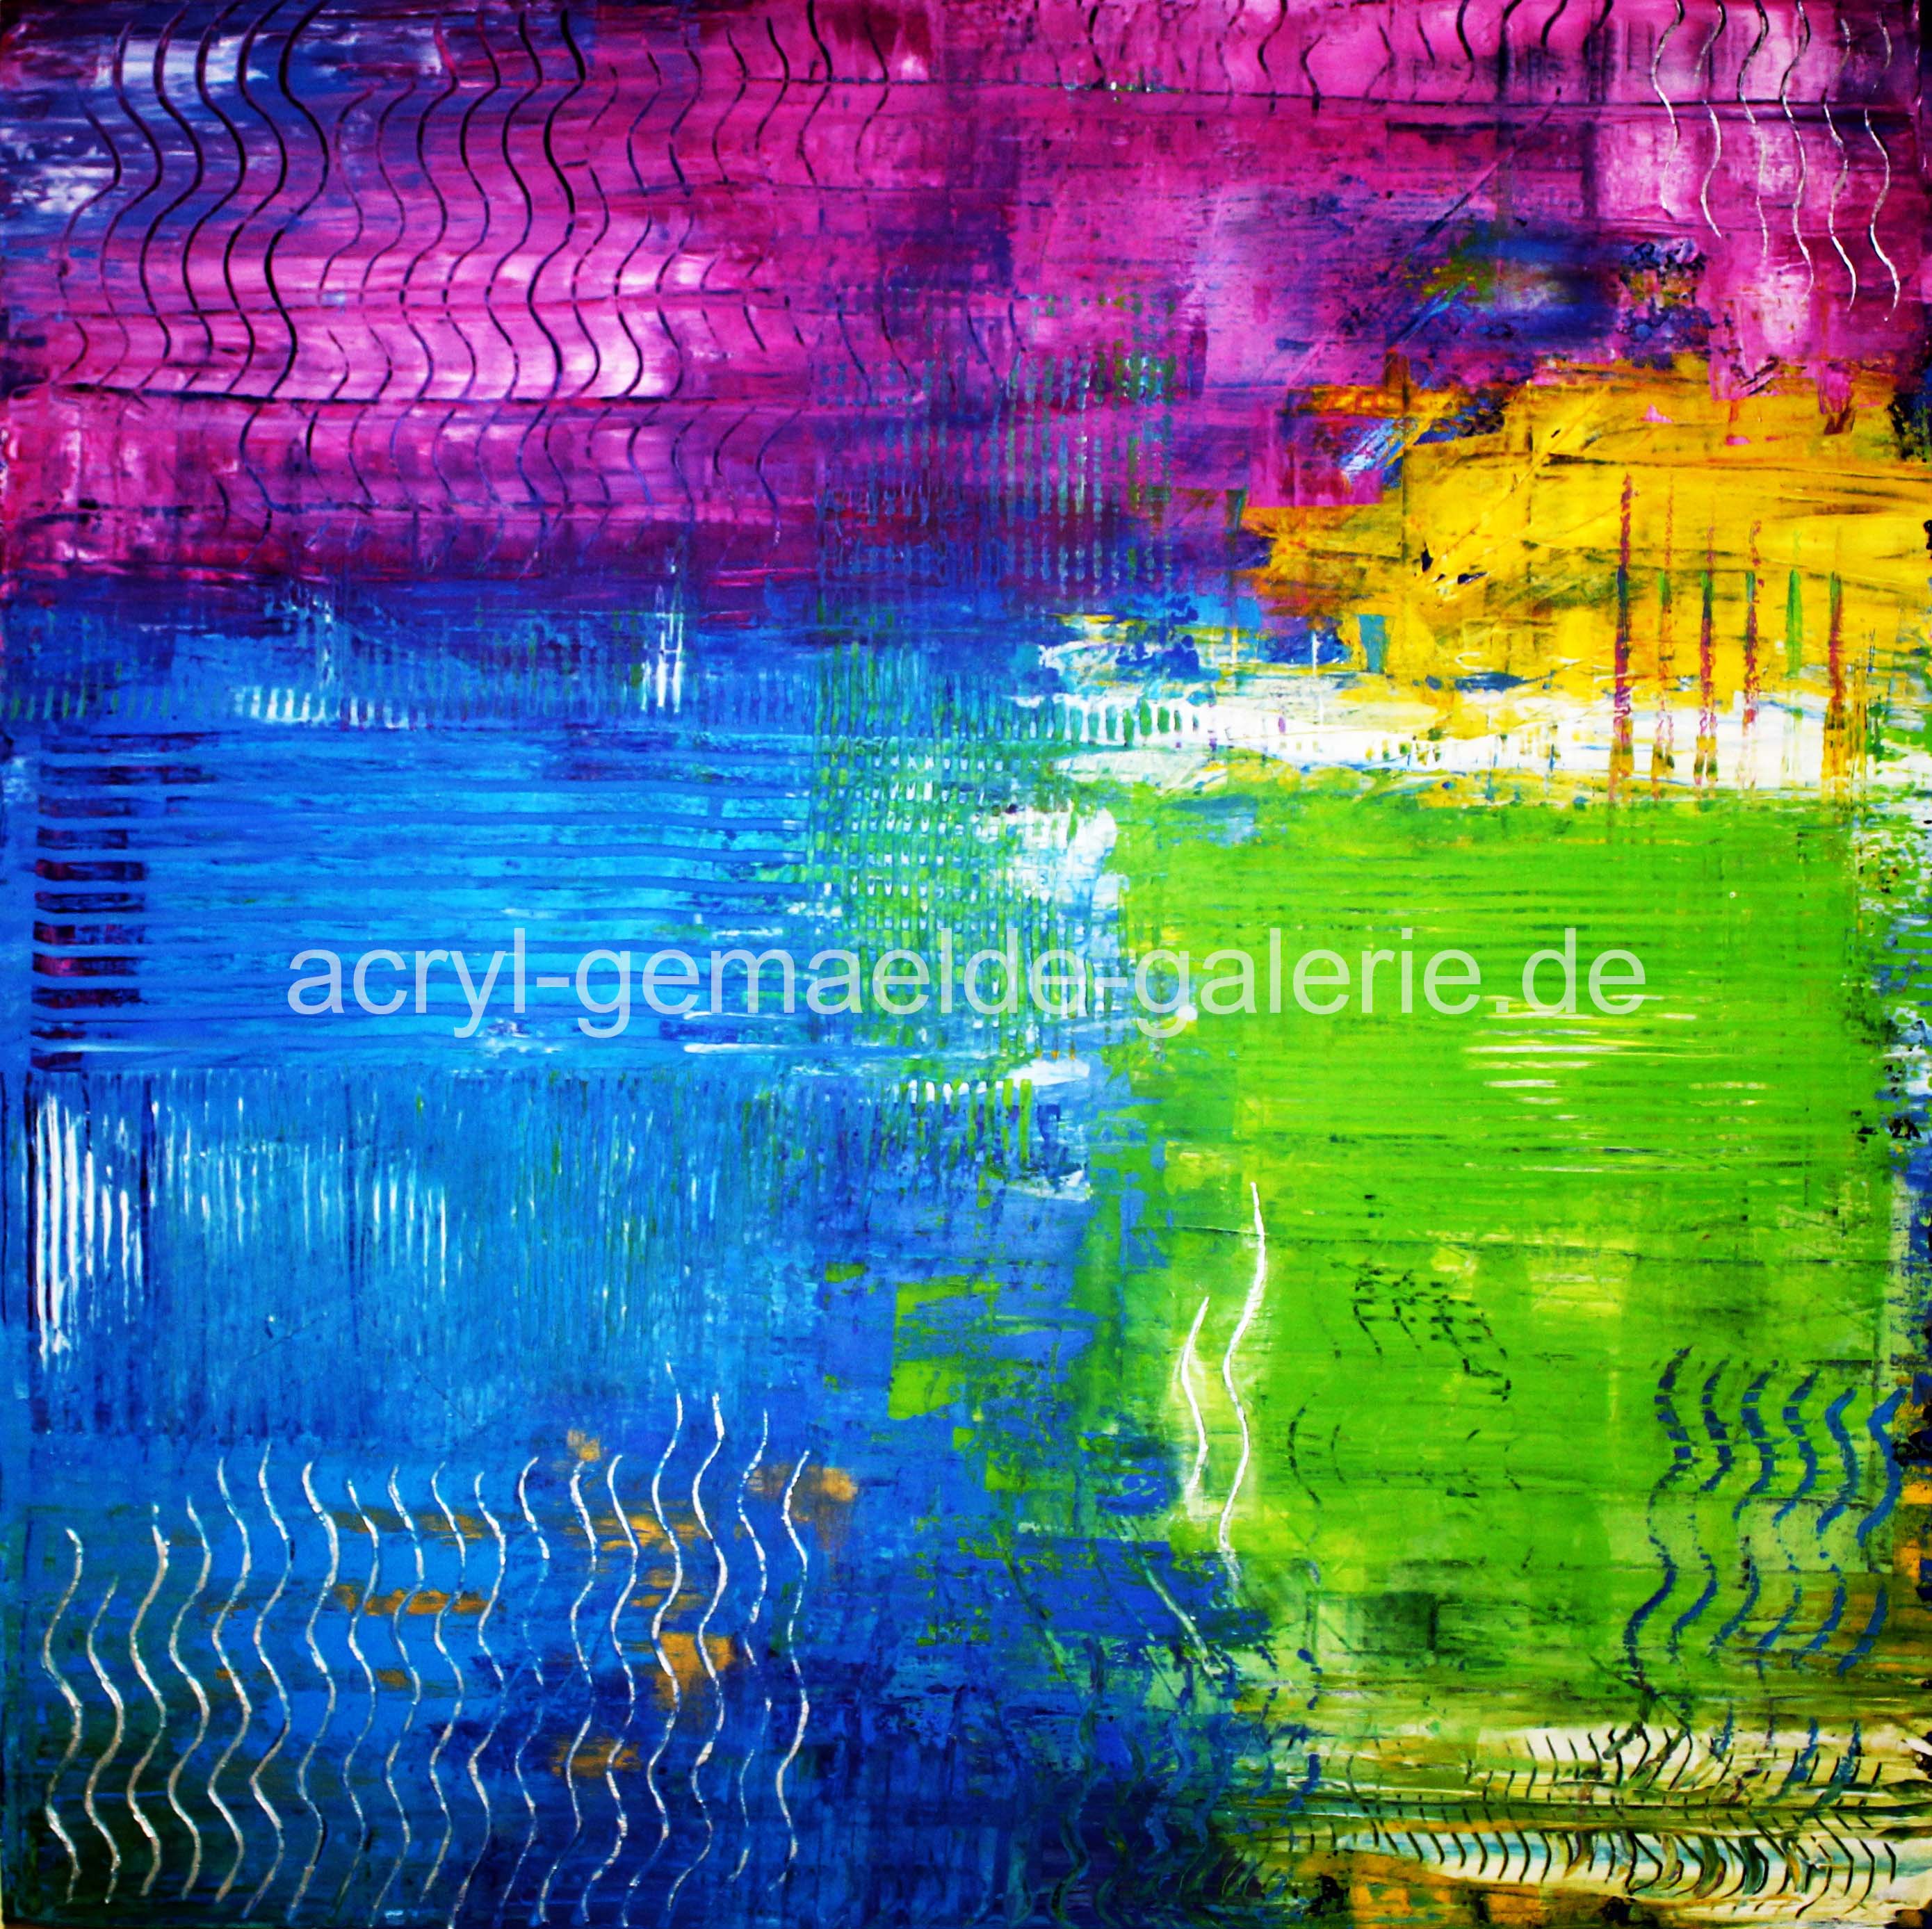 Doris Pohl - Acrylbild - Acrylgemälde